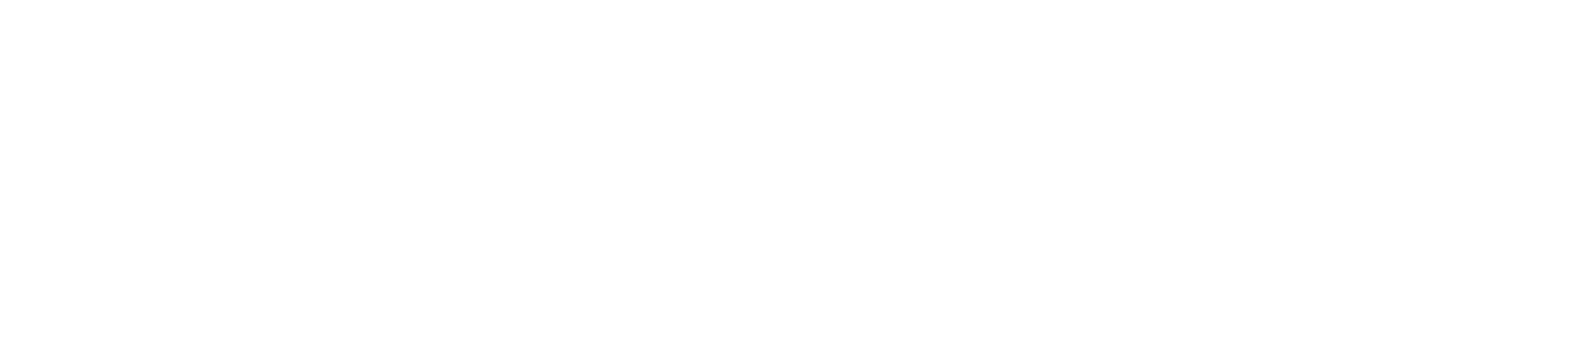 Cohu logo large for dark backgrounds (transparent PNG)